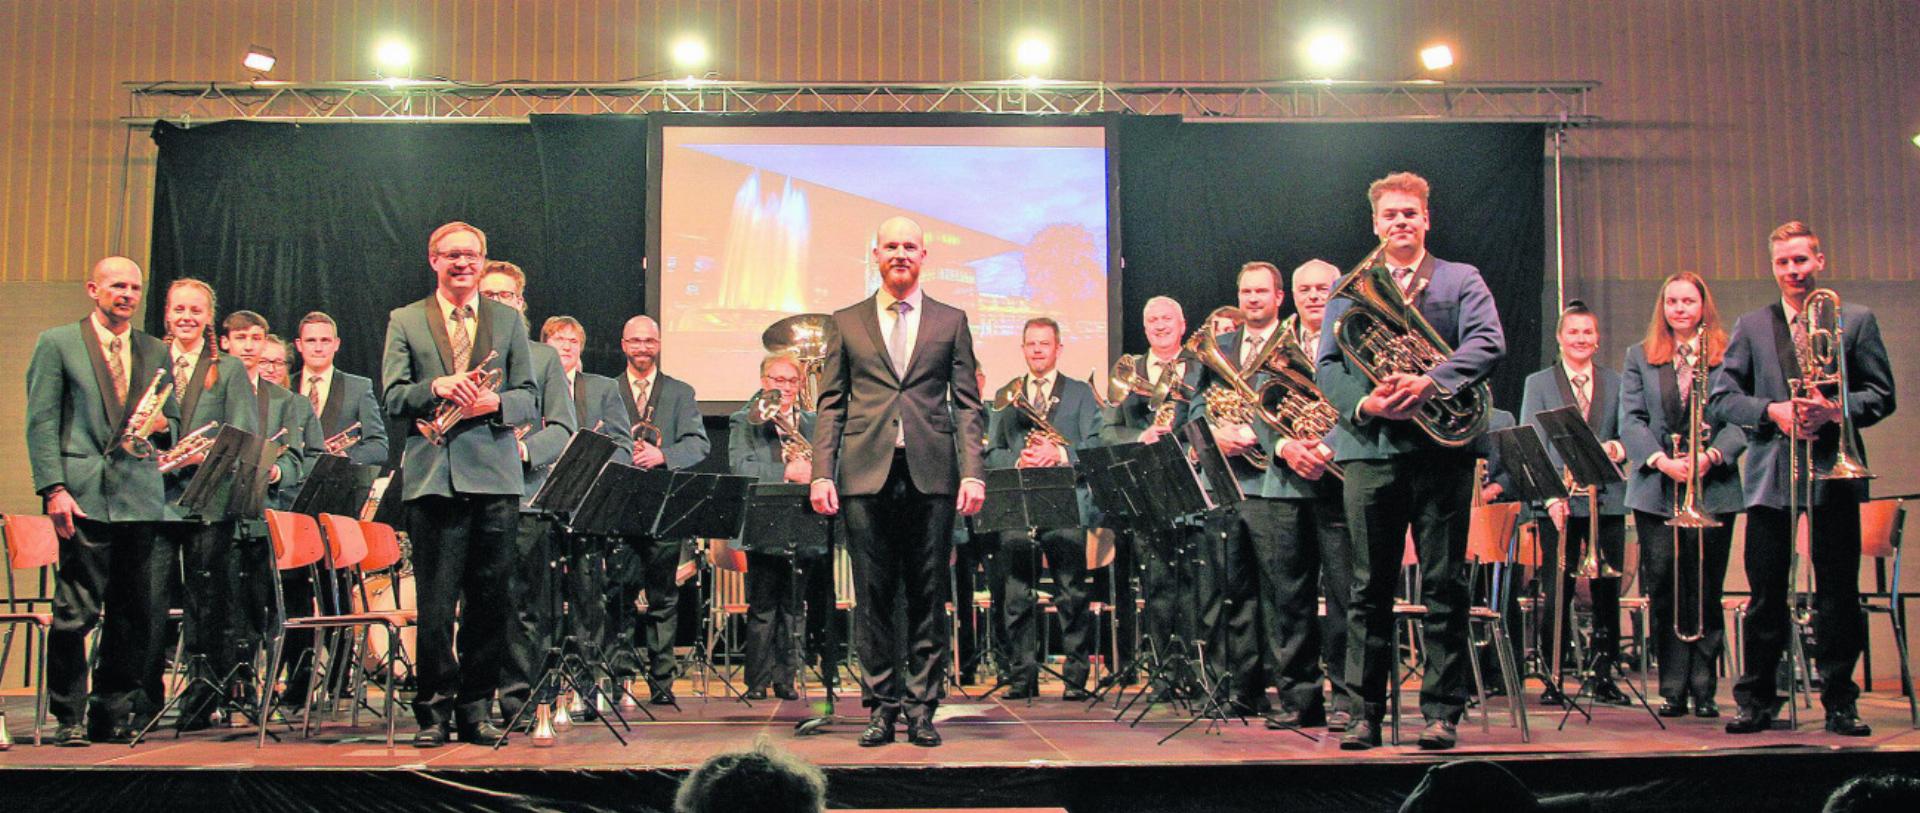 Nach jedem Stück holte sich die Brass Band Auw den wohlverdienten Applaus der Zuhörer. Fotos: saf